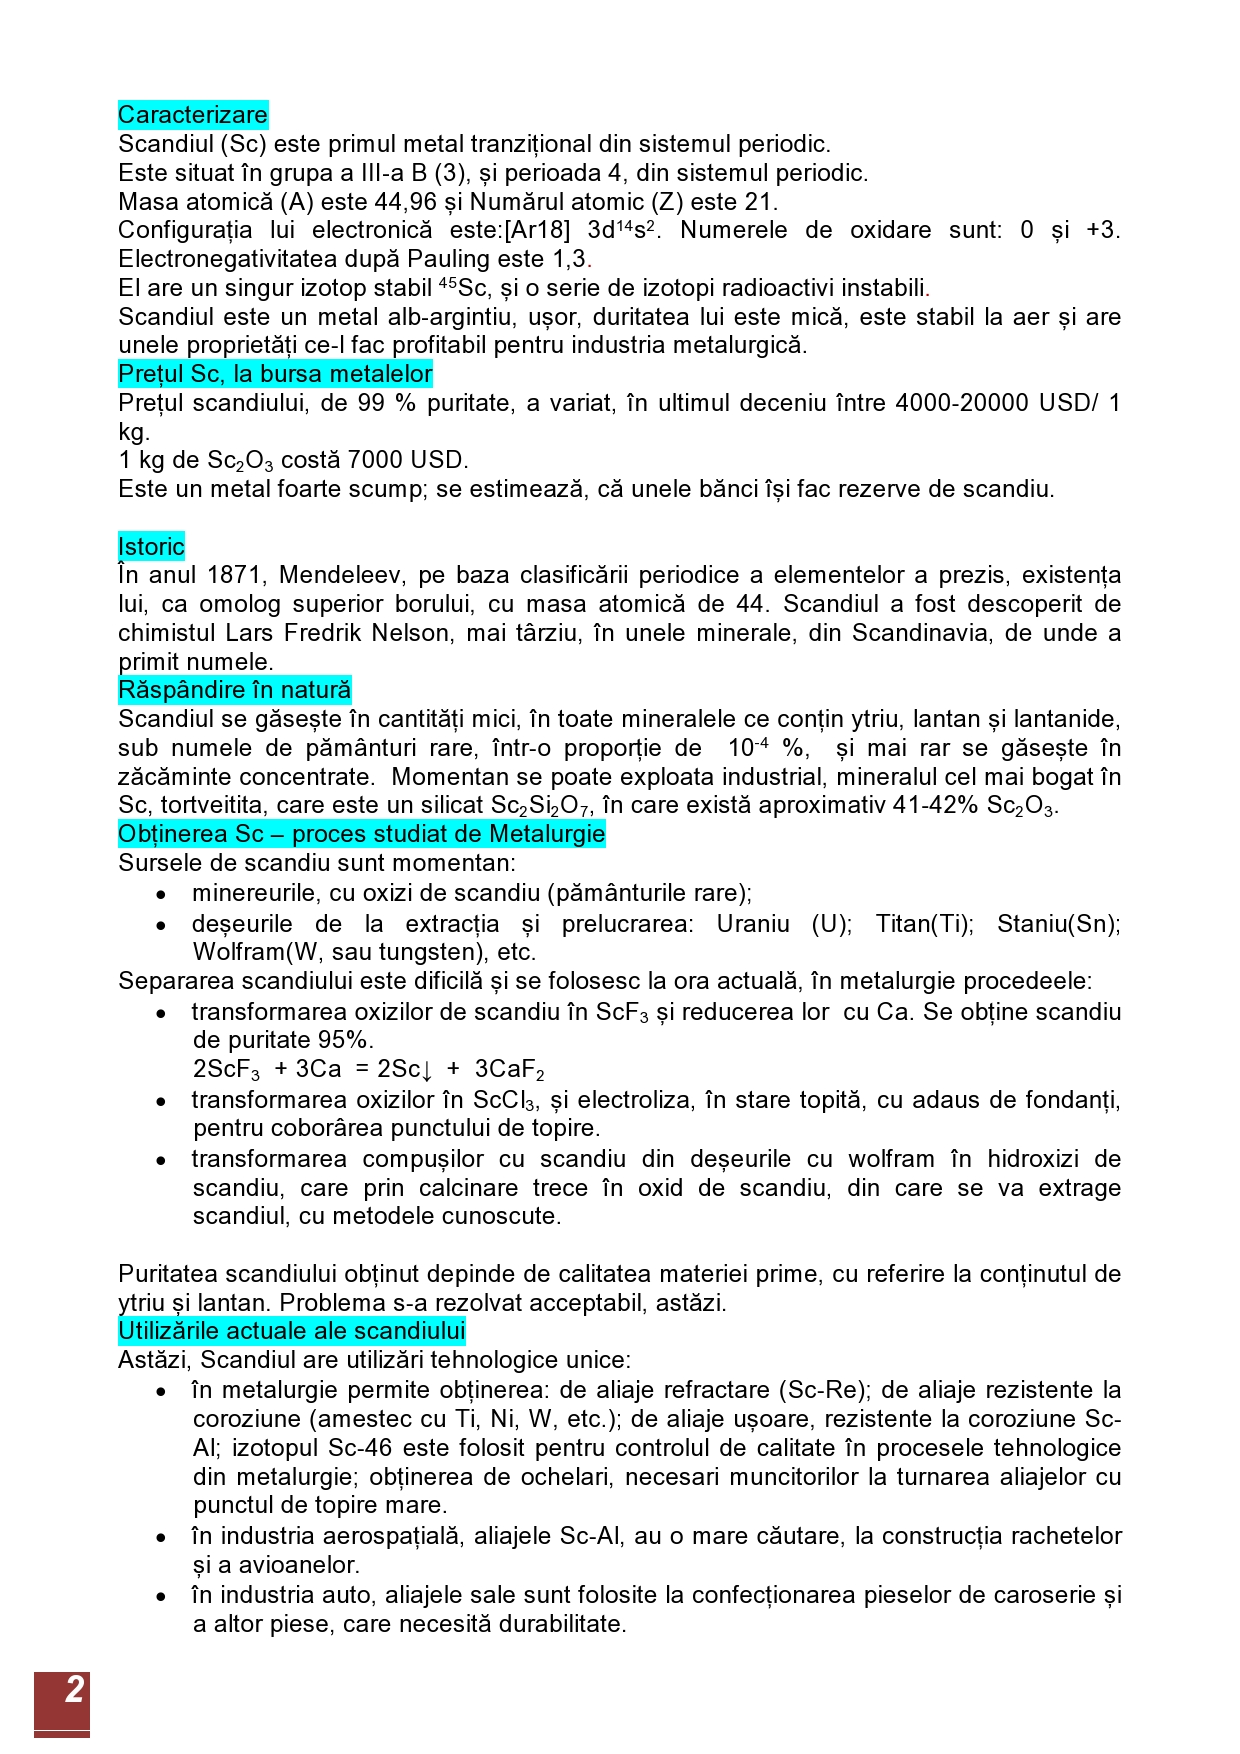 ELECTROLIZA CLORURII DE SCANDIU TOPITE-page0002